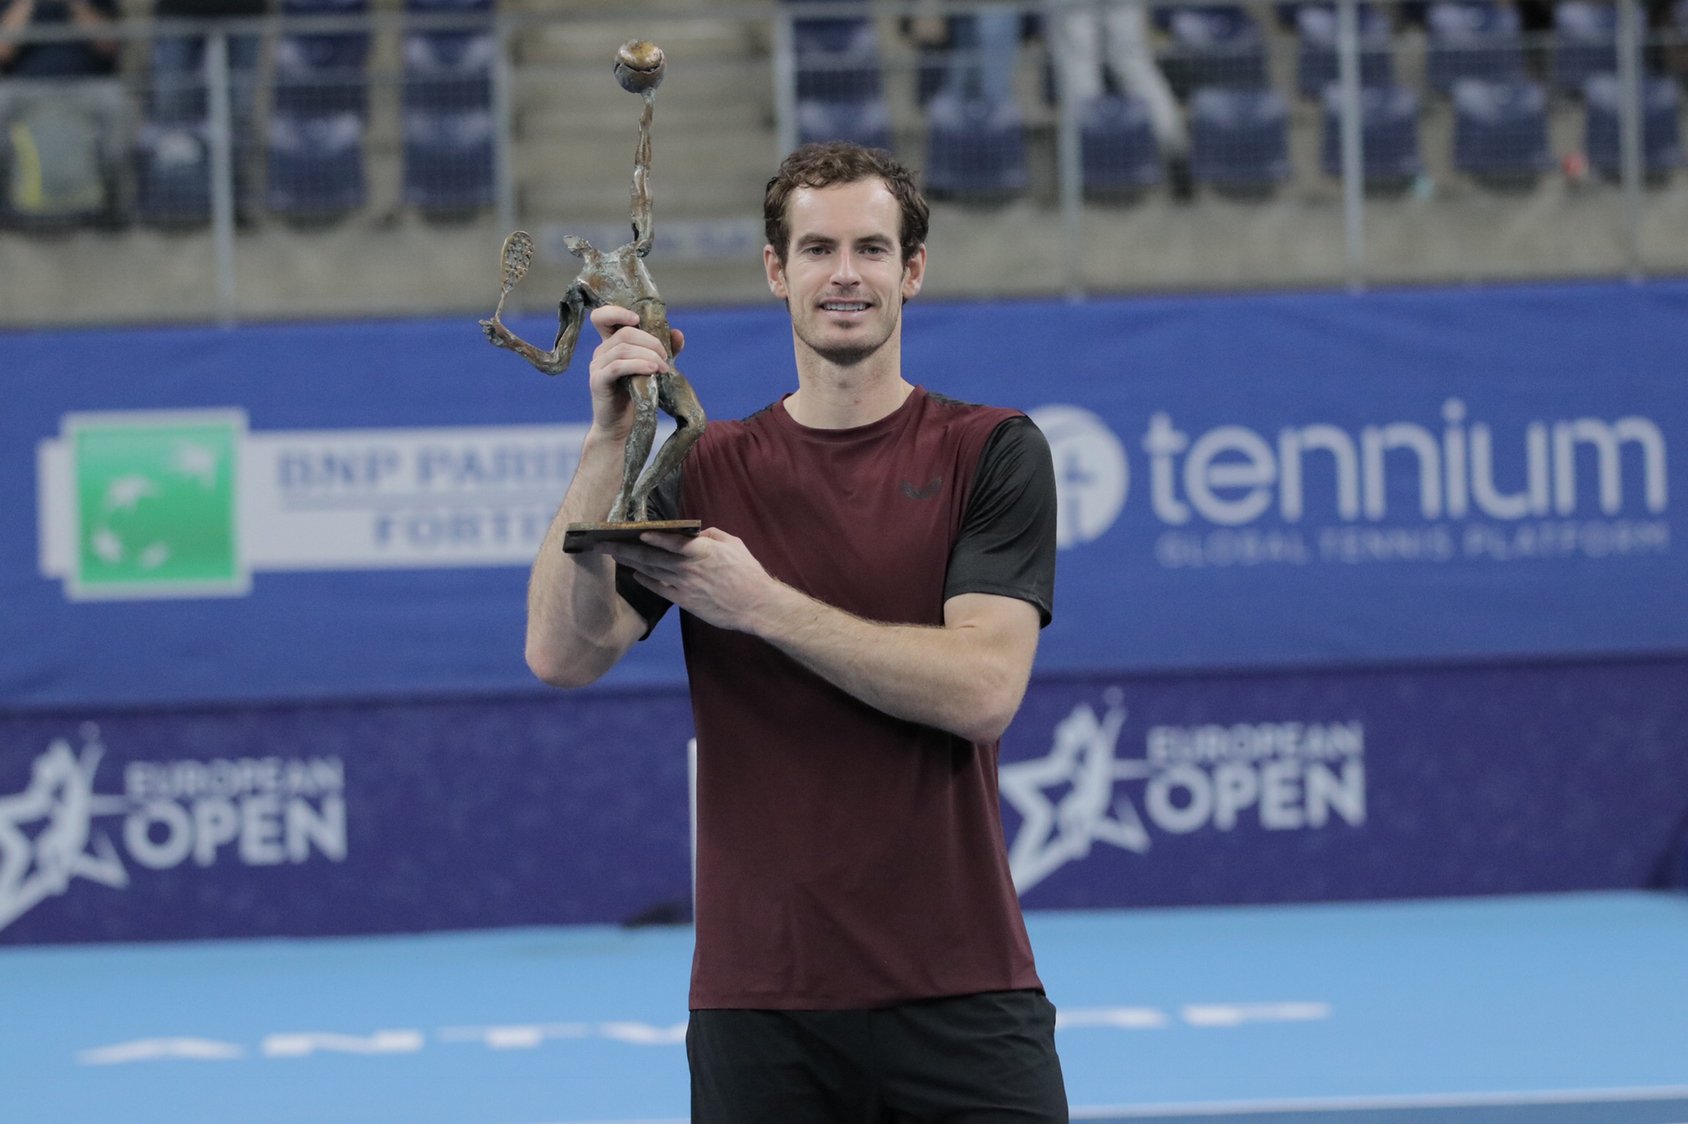 Andy Murray, European Open, Stan Wawrinka, career-saving hip surgery